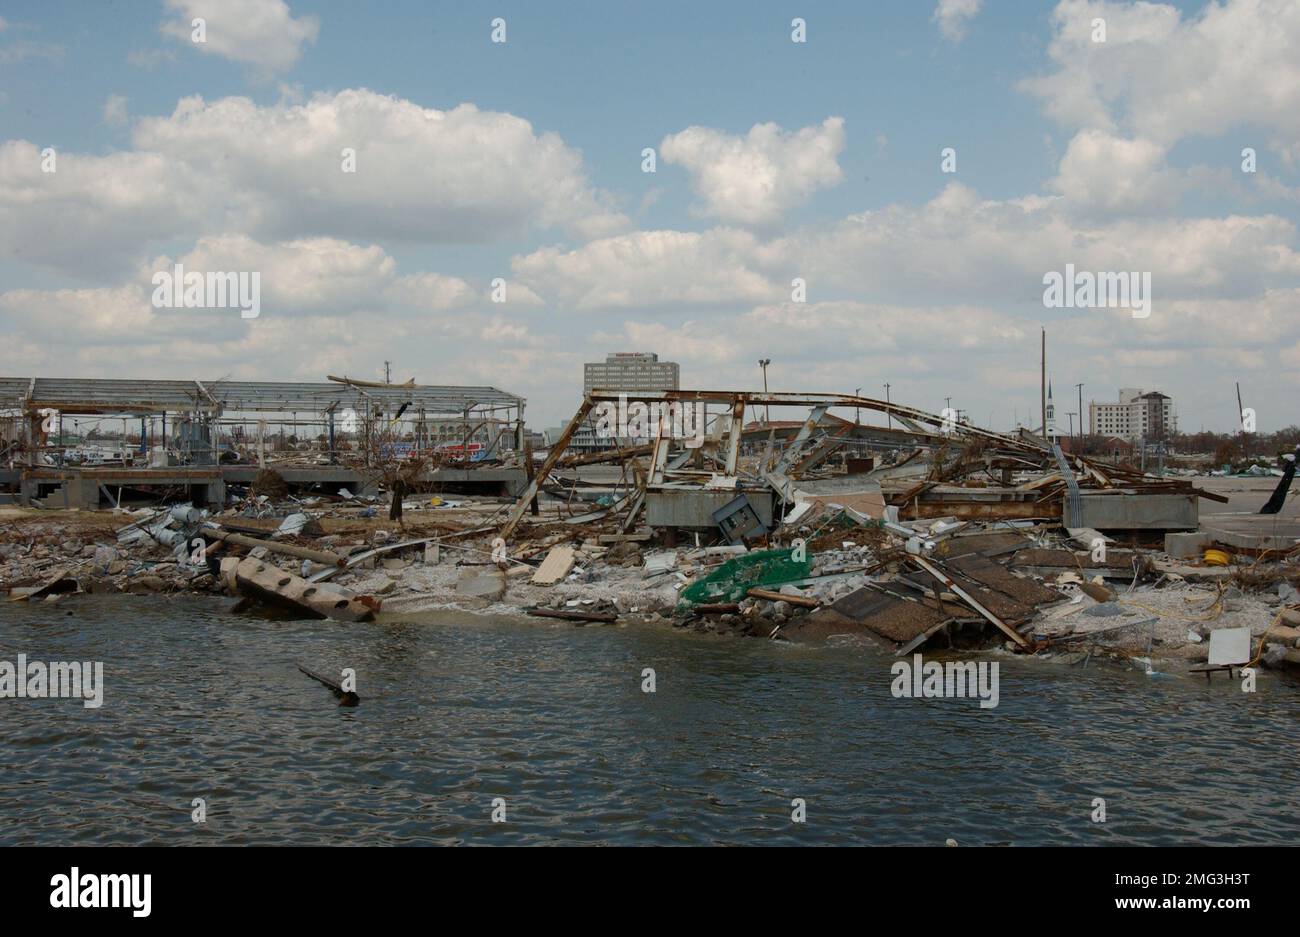 Consecuencias - Misceláneas - 26-HK-48-5. gran acumulación de escombros y estructuras dañadas en waterfront3. Huracán Katrina Foto de stock